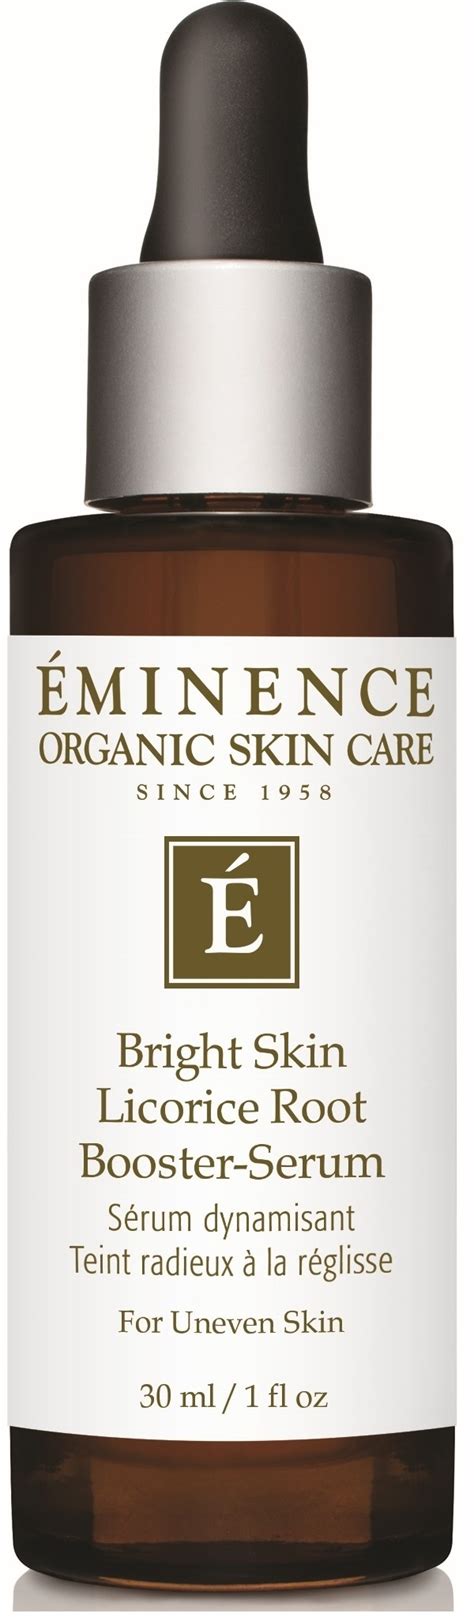 Eminence Organic Skincare Bright Skin Licorice Root Booster Serum